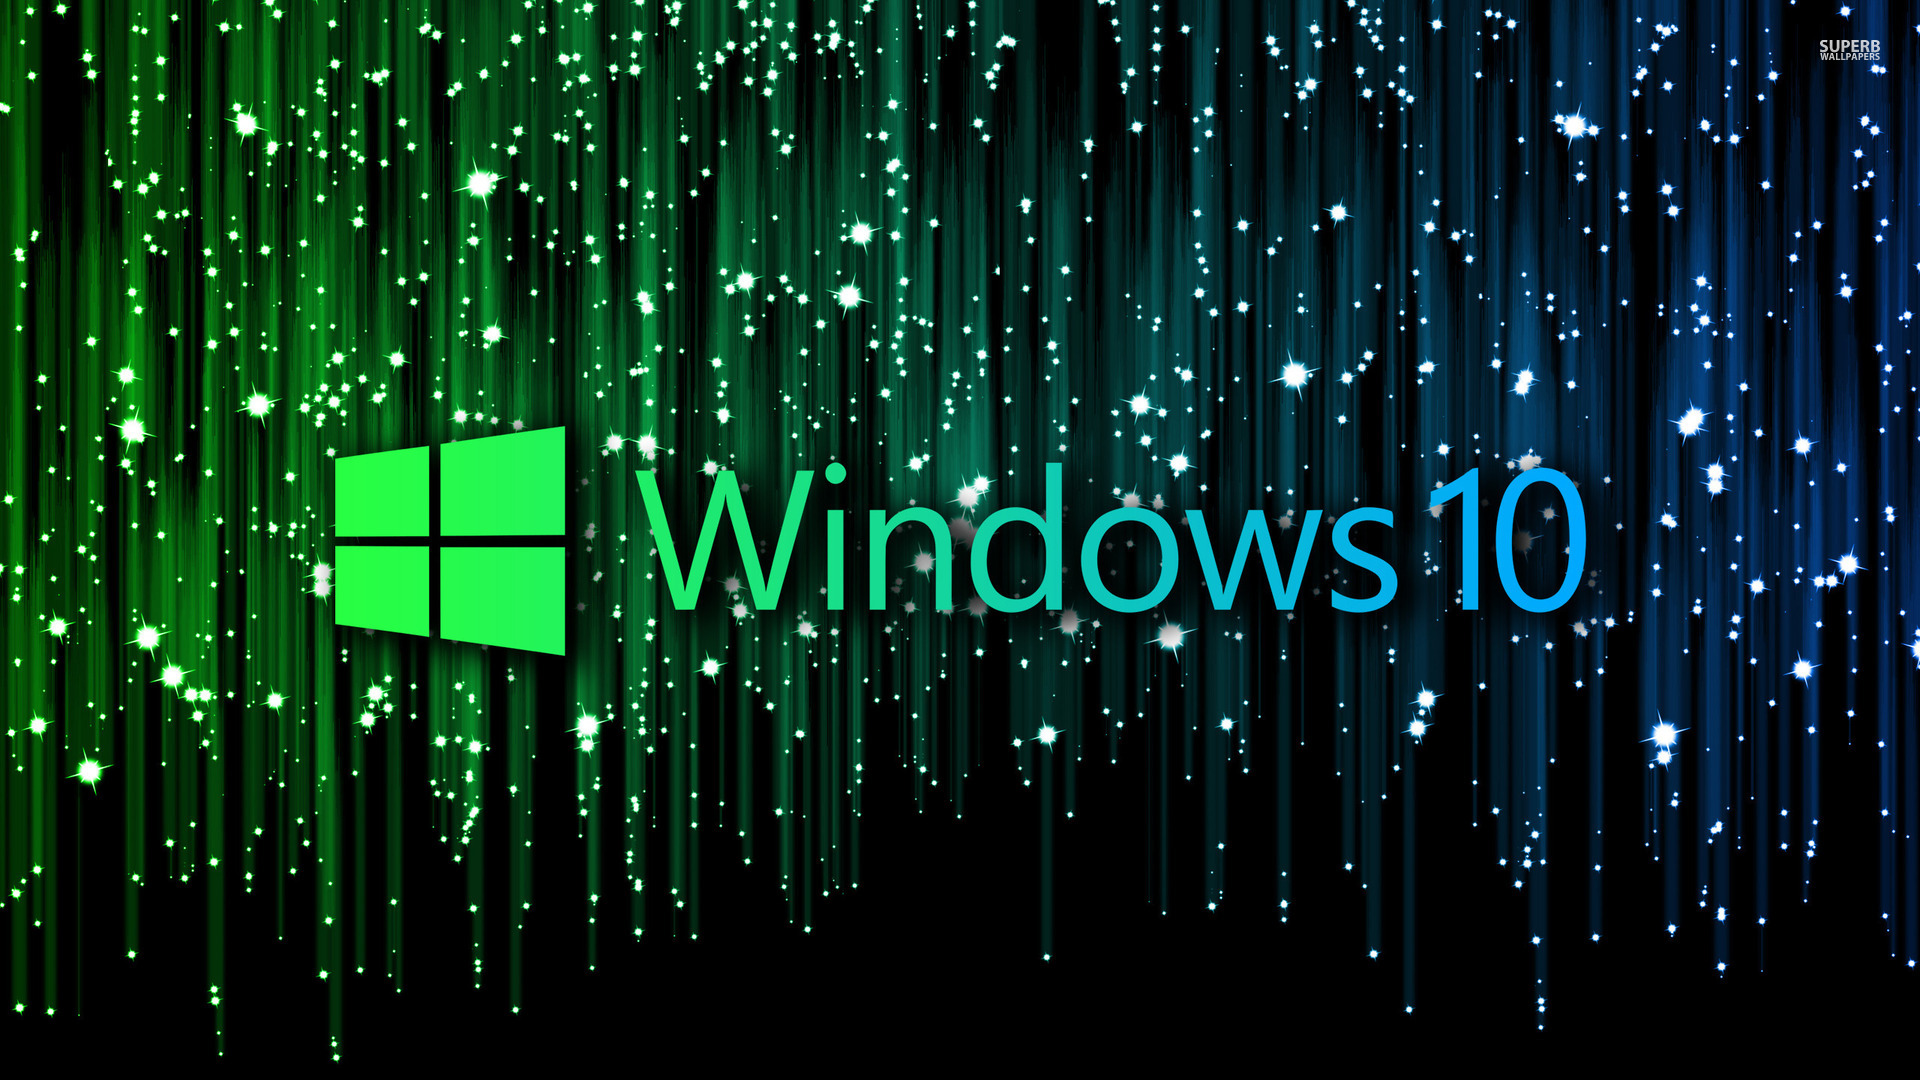 Wallpaper Windows 10 HD - CuteWallpaper.org